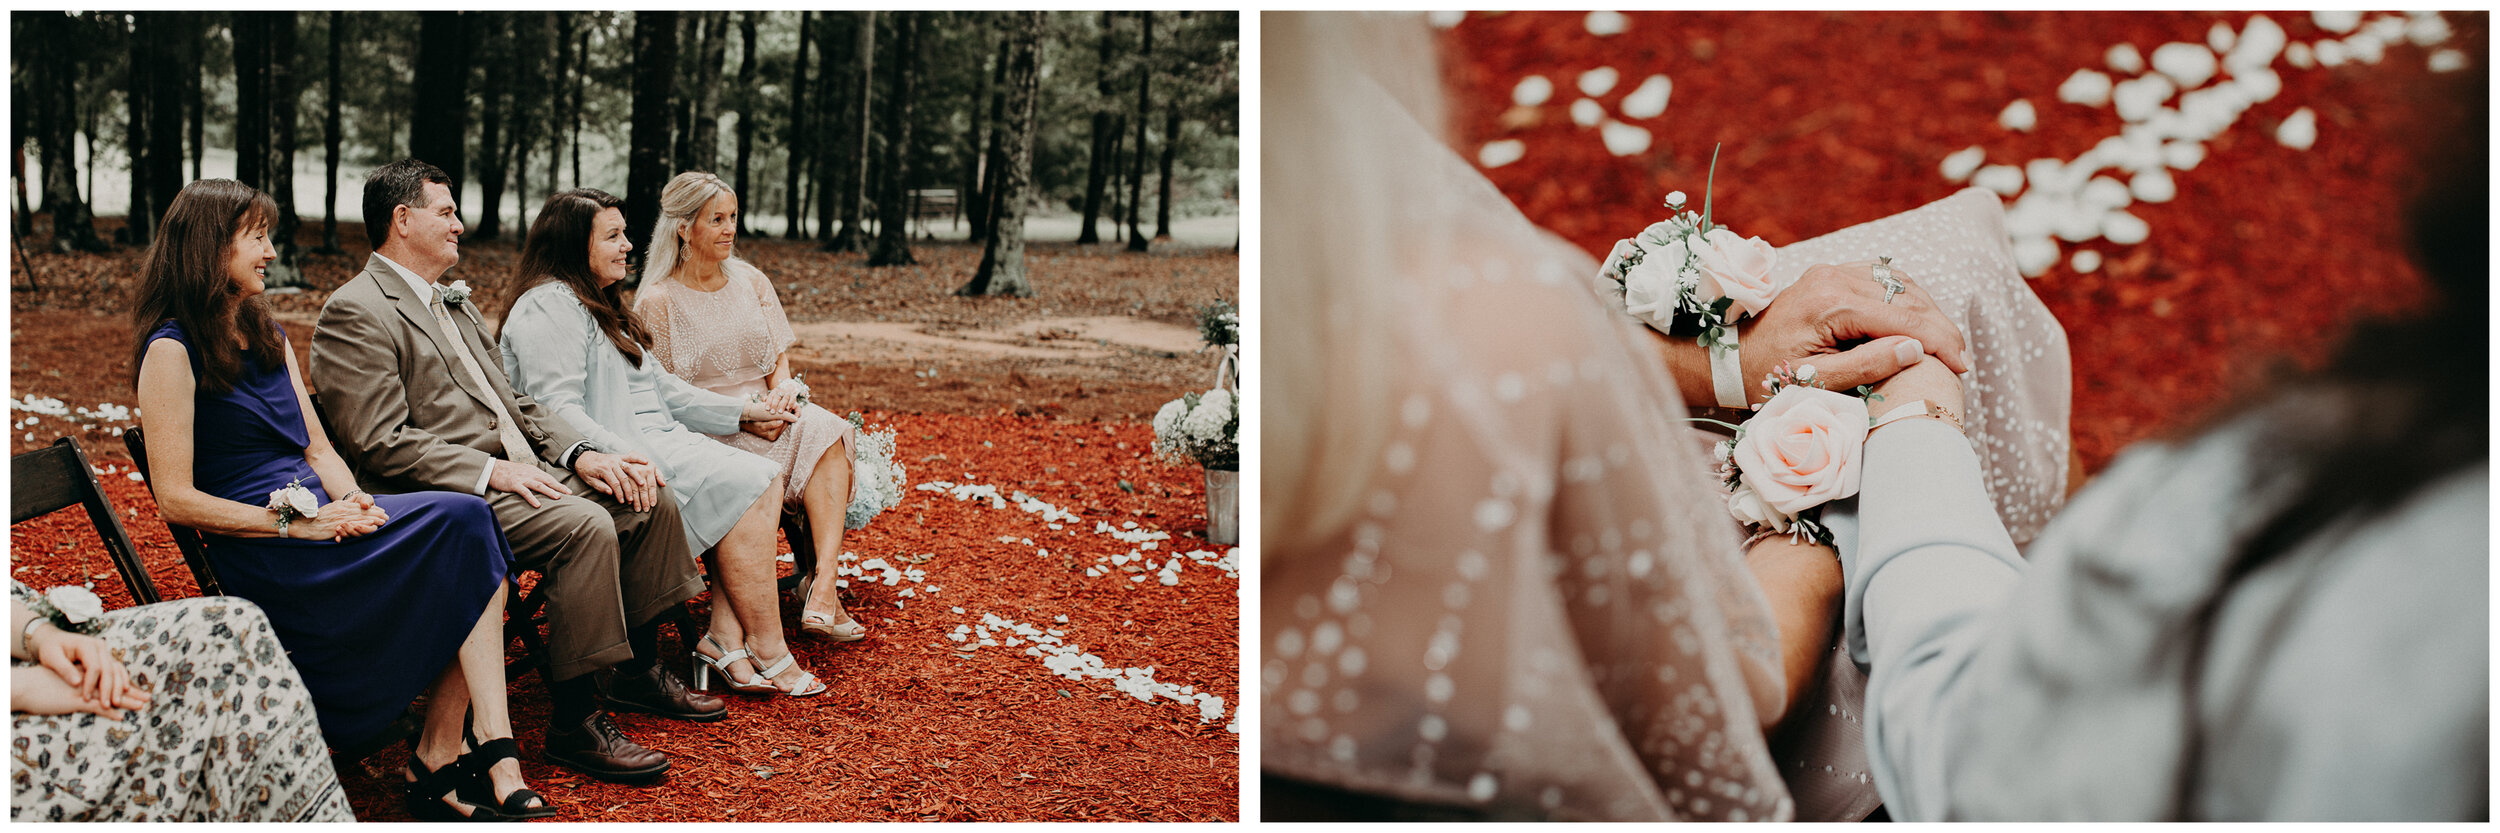 21-backyard-wedding-intimate-wedding-alabama-wedding-photographer.jpg